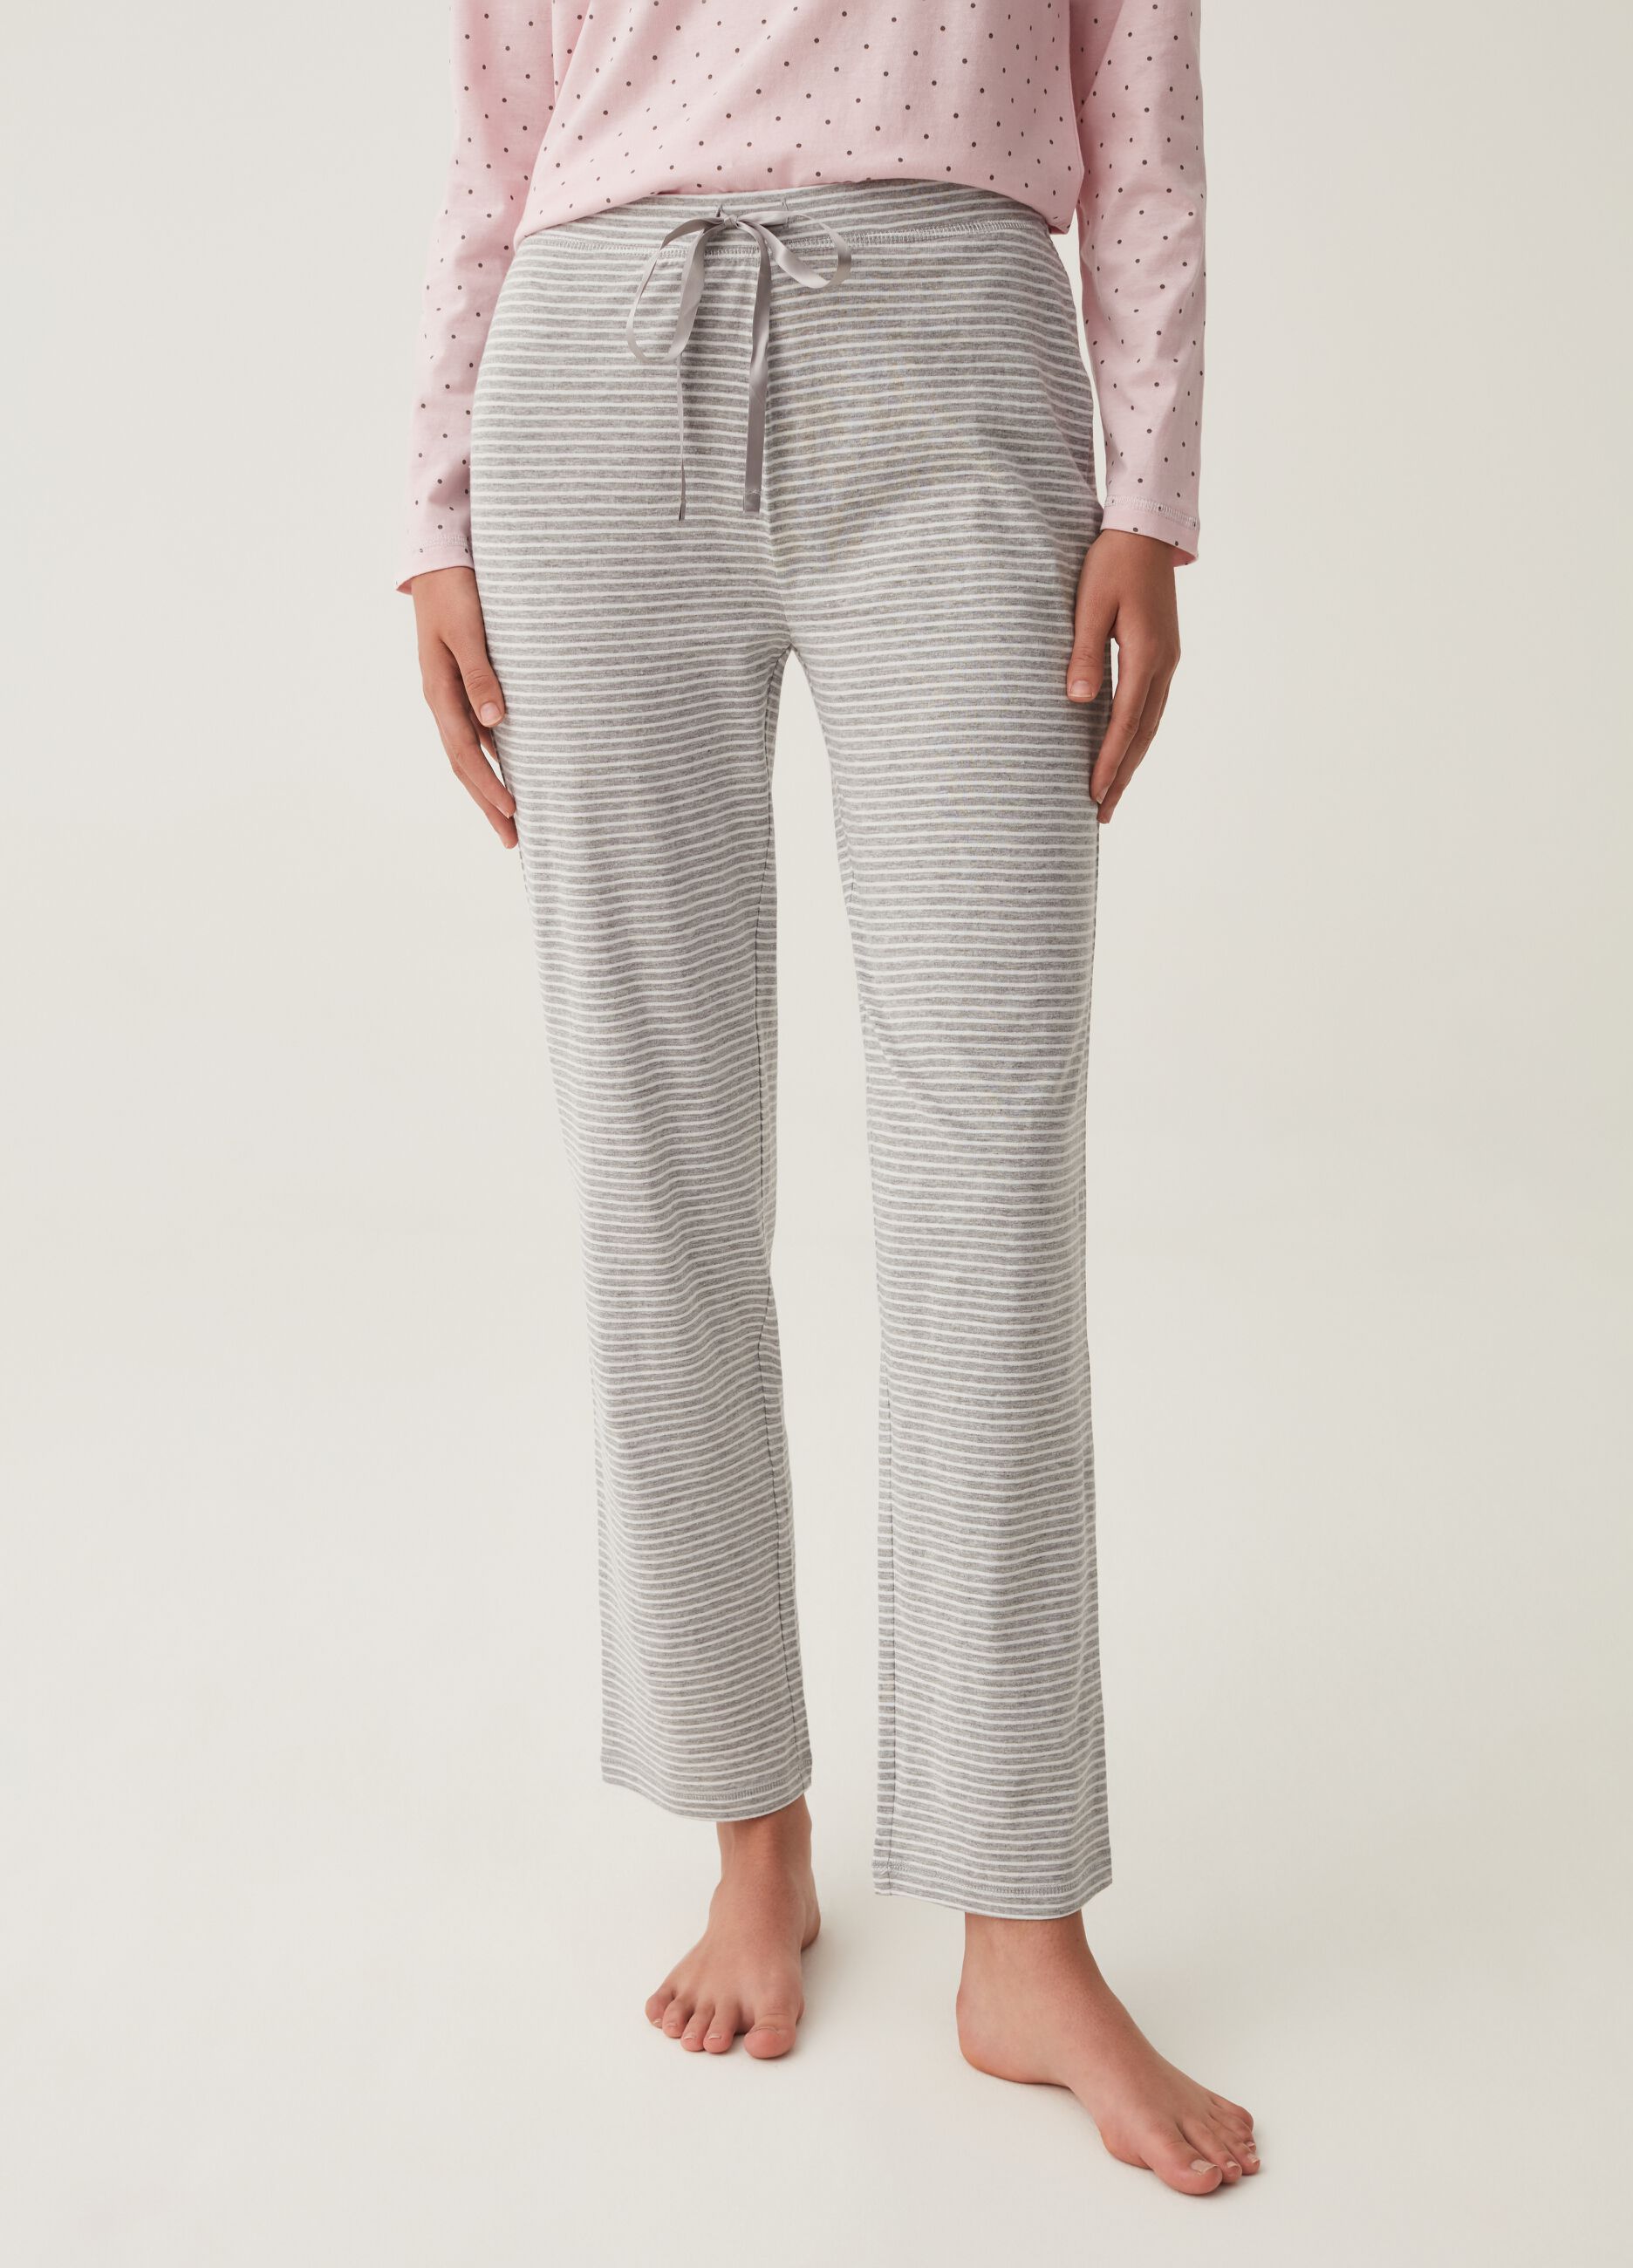 Pantalone pigiama in cotone e viscosa a righe_1